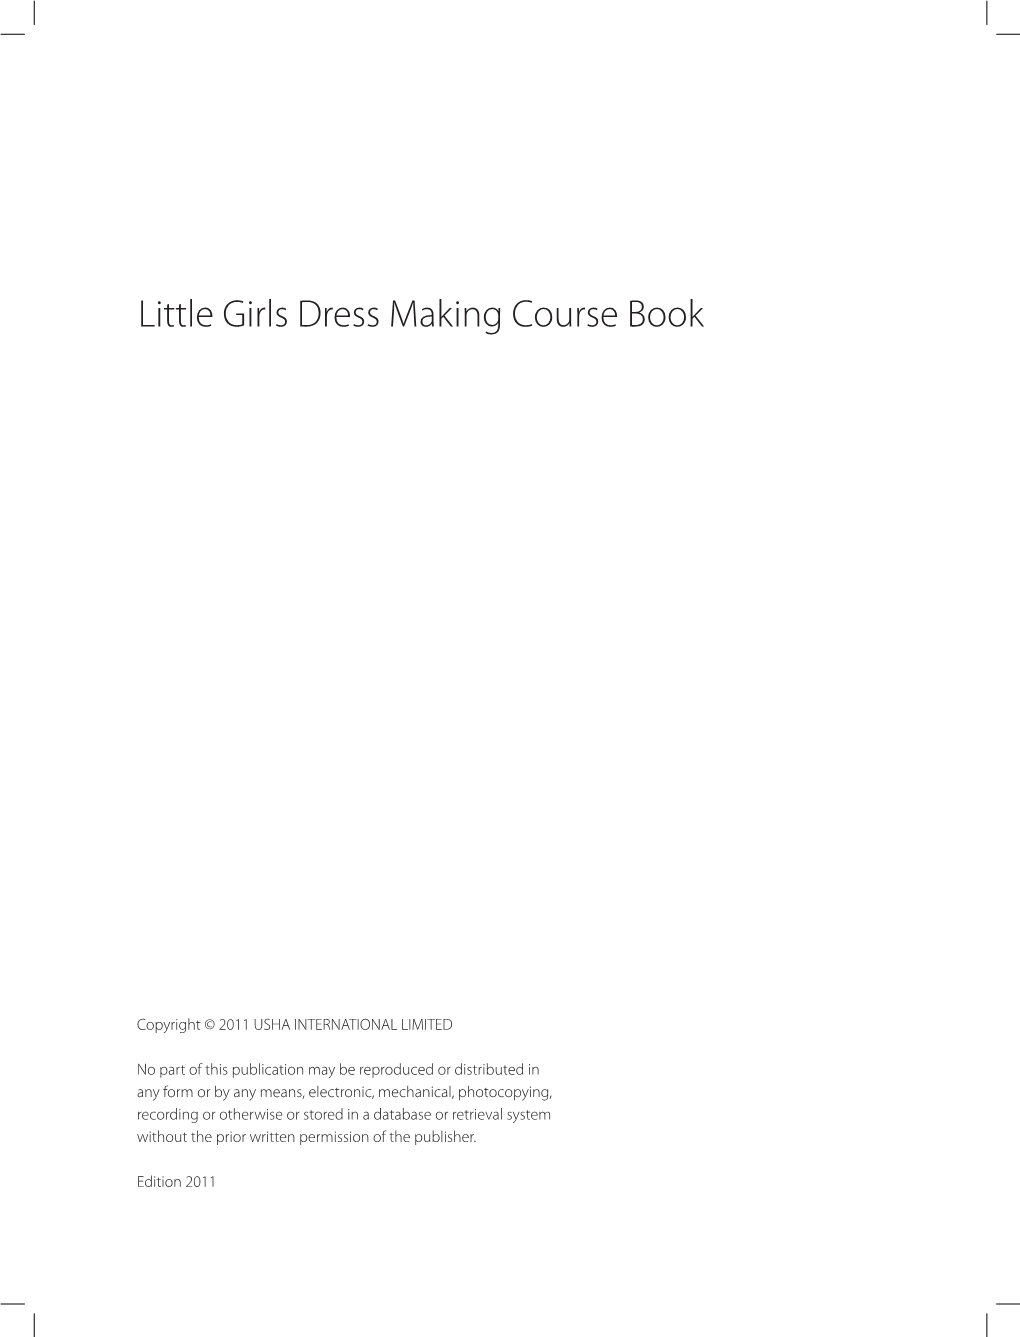 Little-Girls-Dress-Making-Course-Book